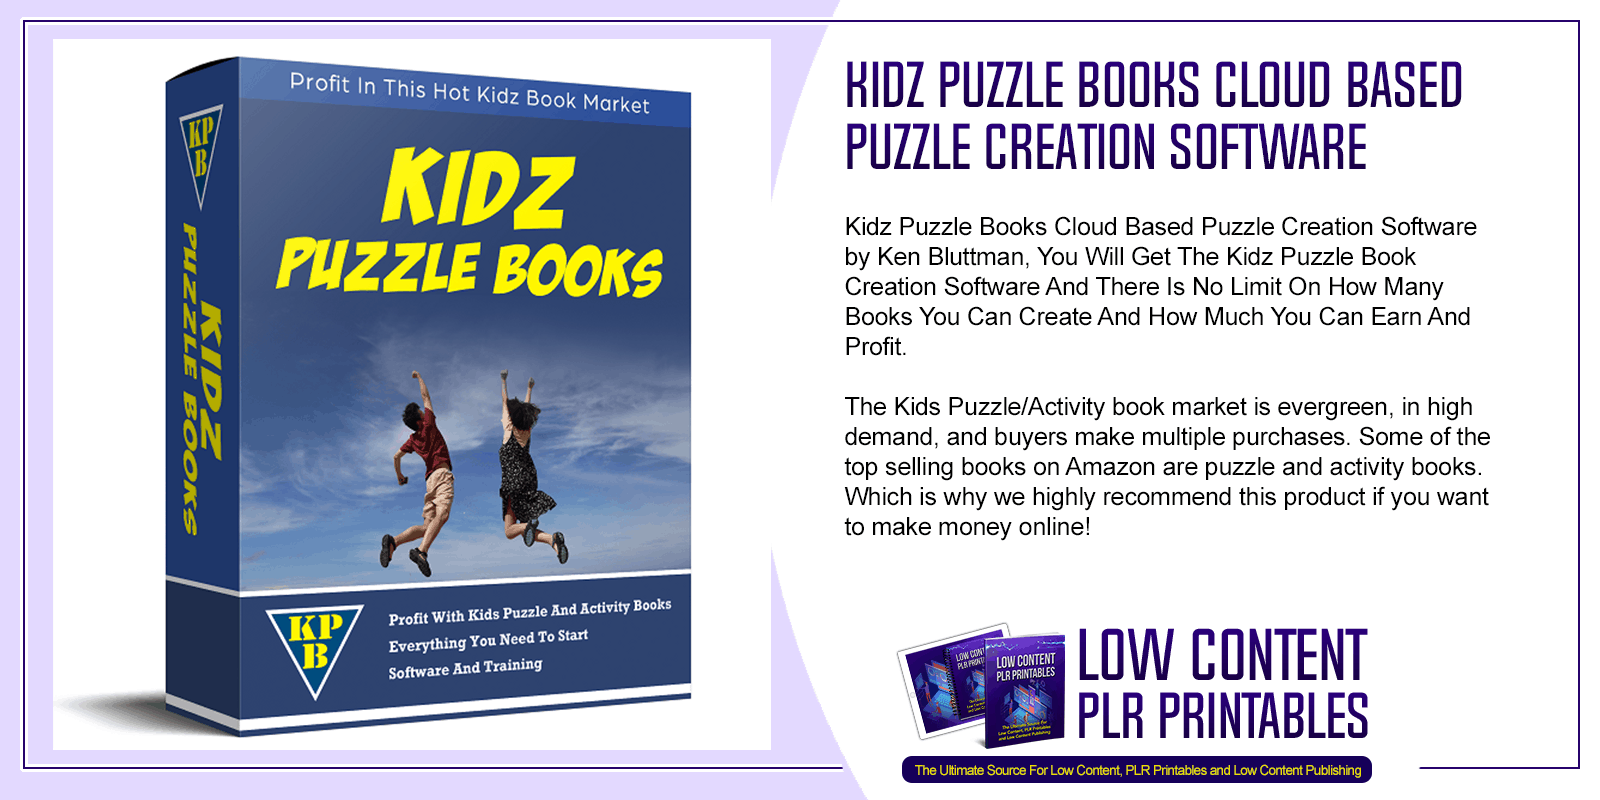 Kidz Puzzle Books Cloud Based Puzzle Creation Software